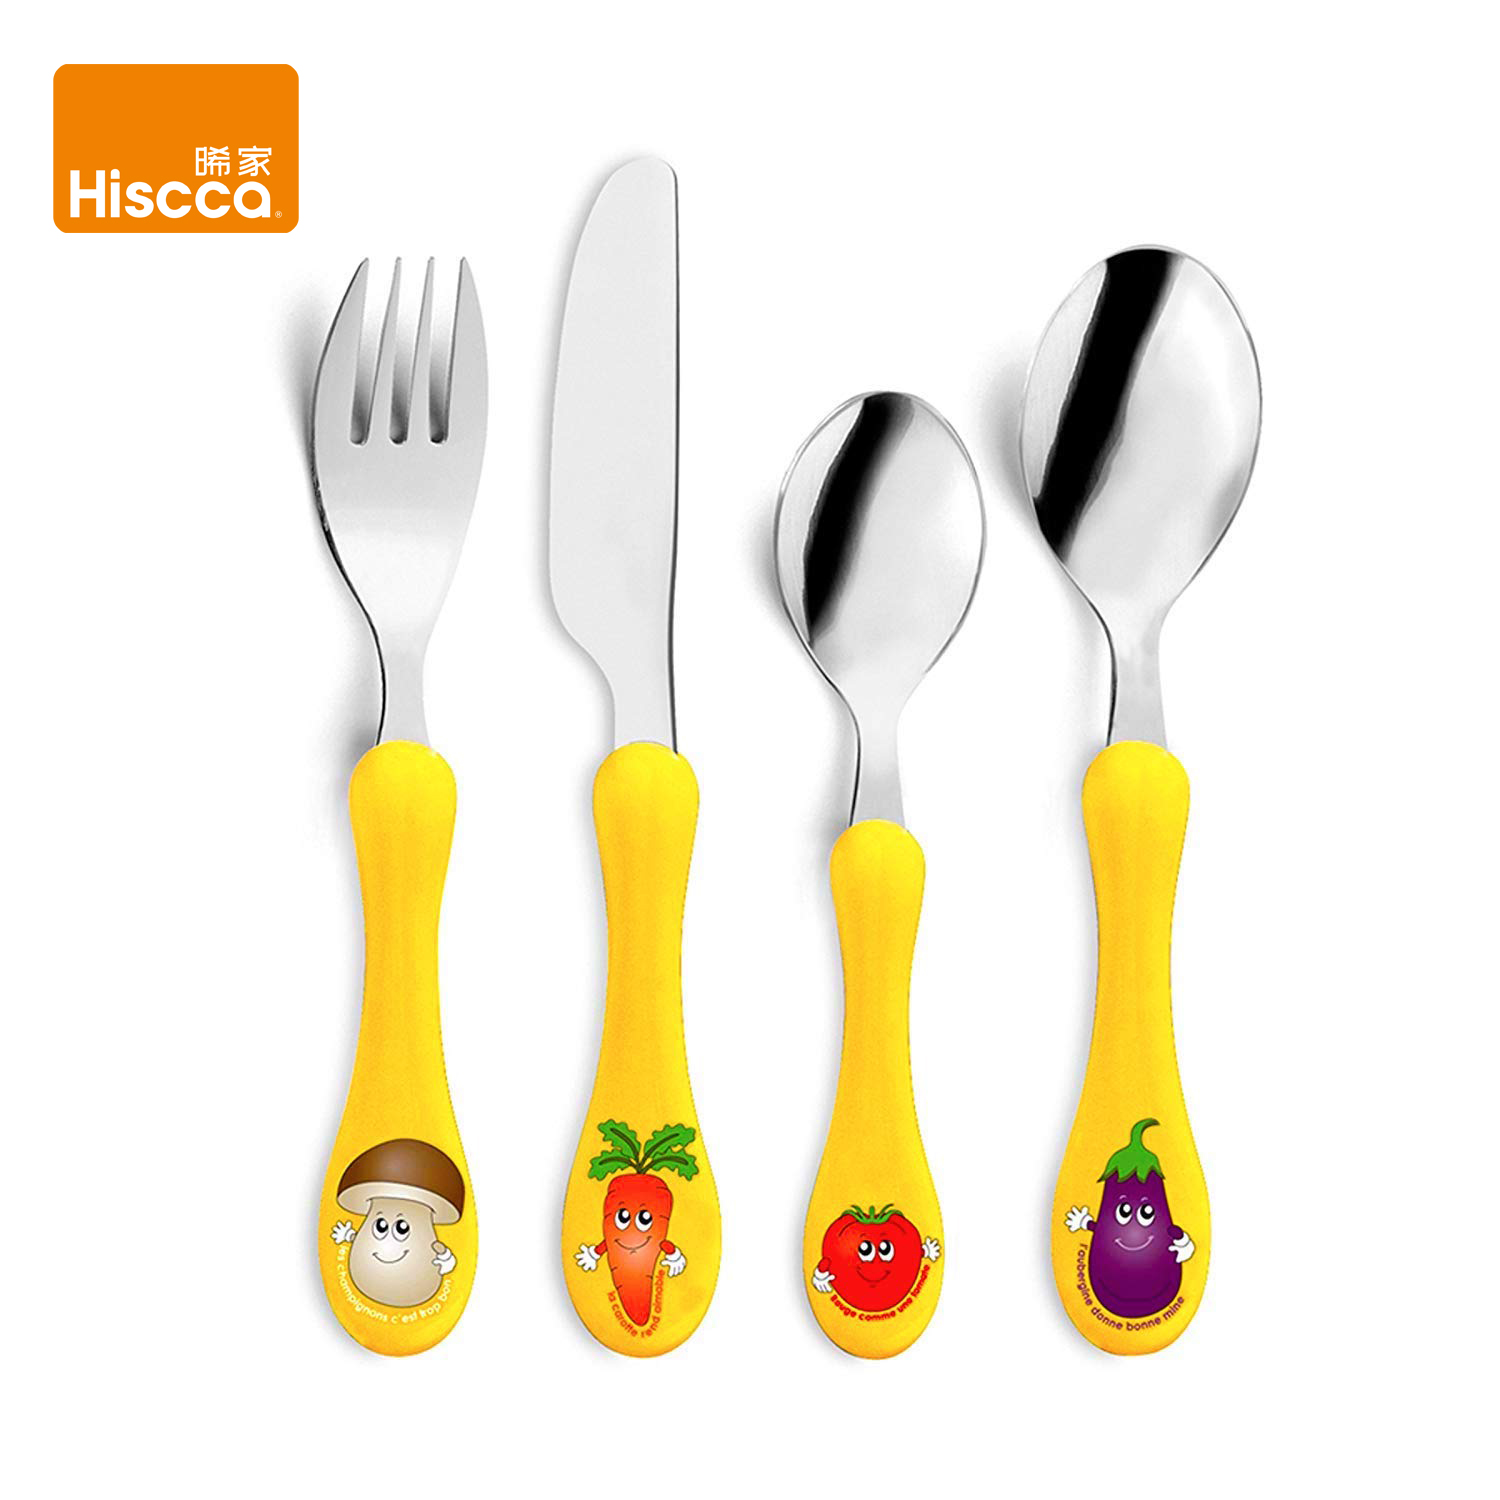 Hiscca 法国进口儿童牛排餐具品牌限定版专业儿童西餐刀叉勺套装